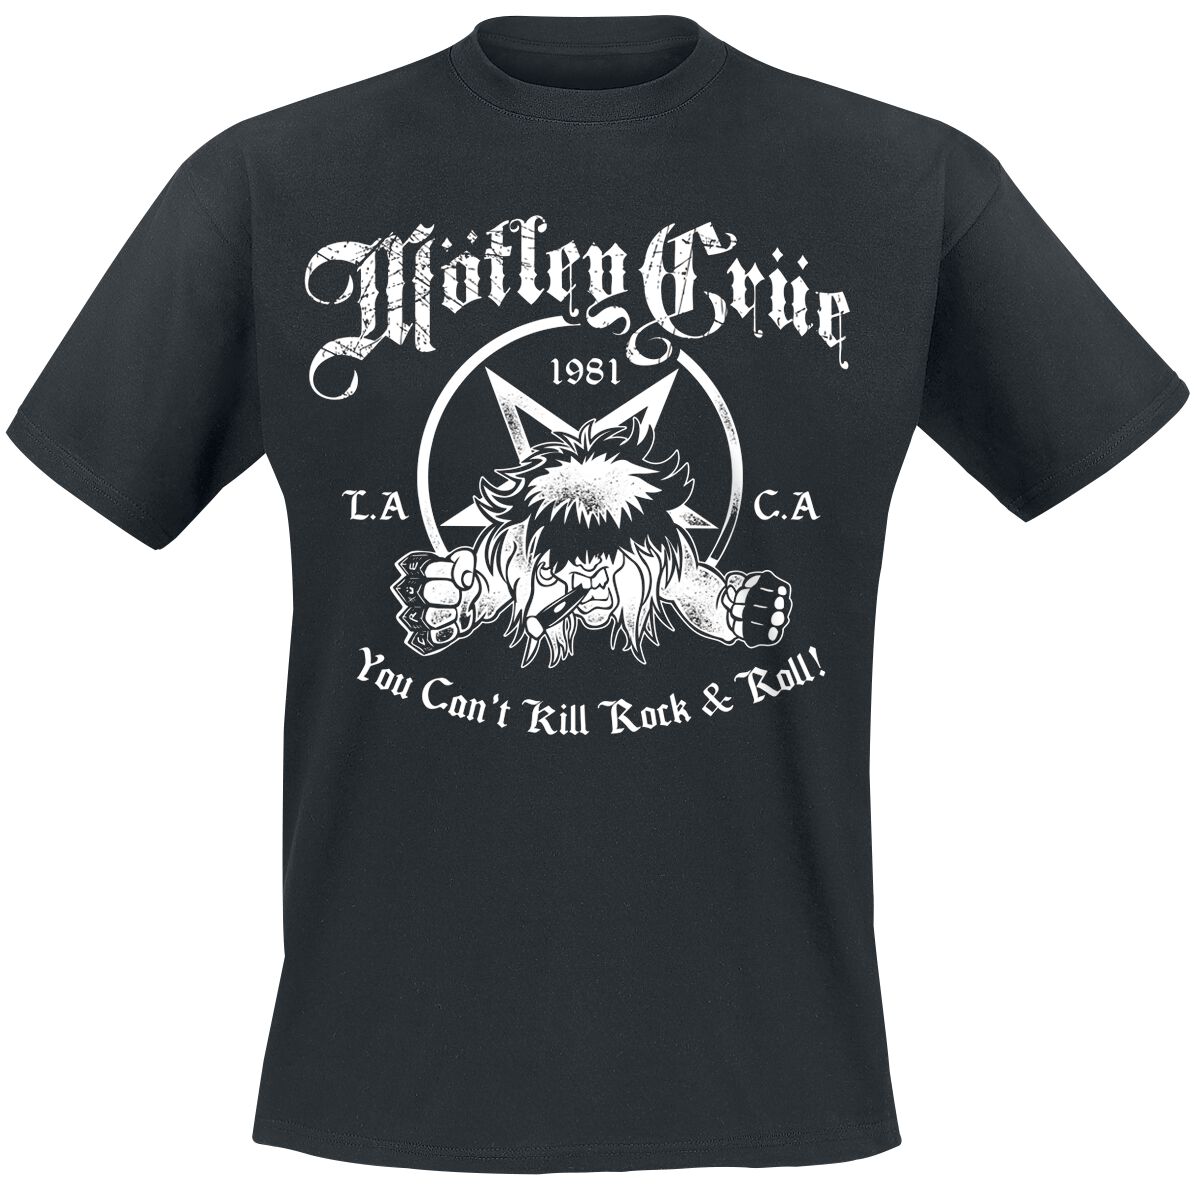 Mötley Crüe T-Shirt - You Can`t Kill Rock`n Roll - S bis XXL - für Männer - Größe L - schwarz  - Lizenziertes Merchandise!